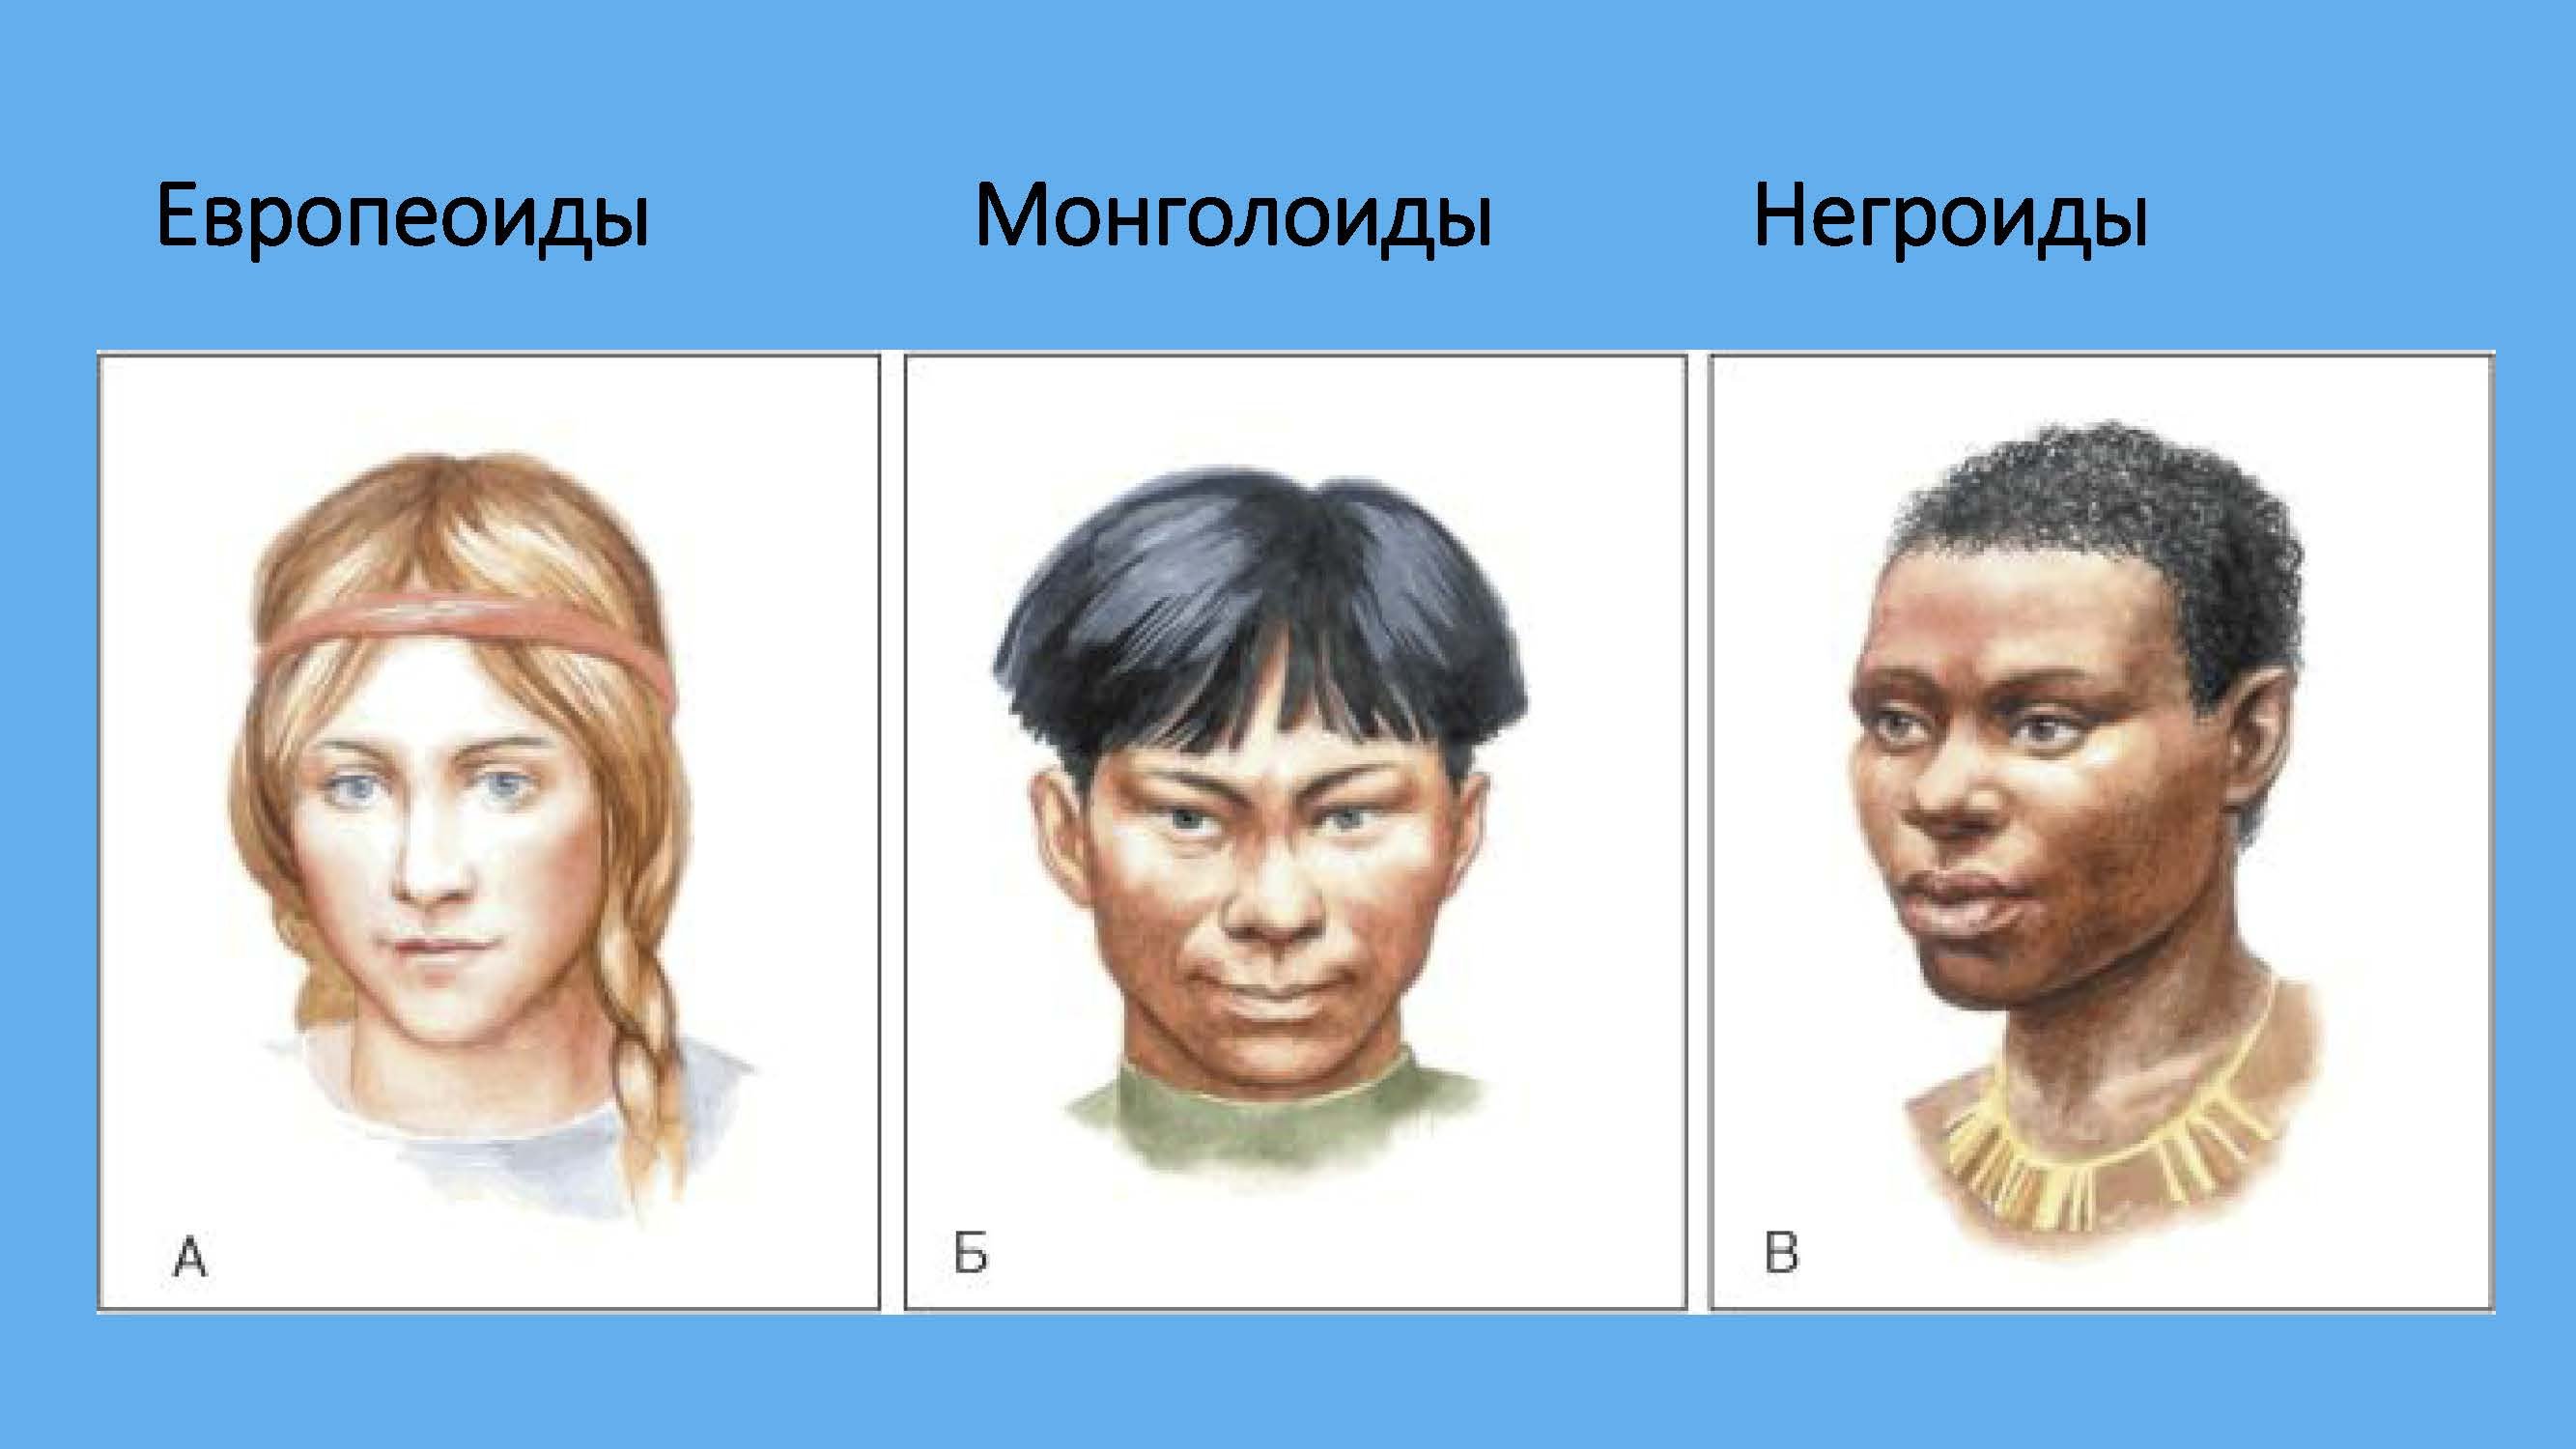 Расы человека негроидная европеоидная. Расы Европеоид монголоид. Европеоидная монголоидная негроидная раса. Монголоидная раса и негроидная раса. Европеоид монголоид негроид.